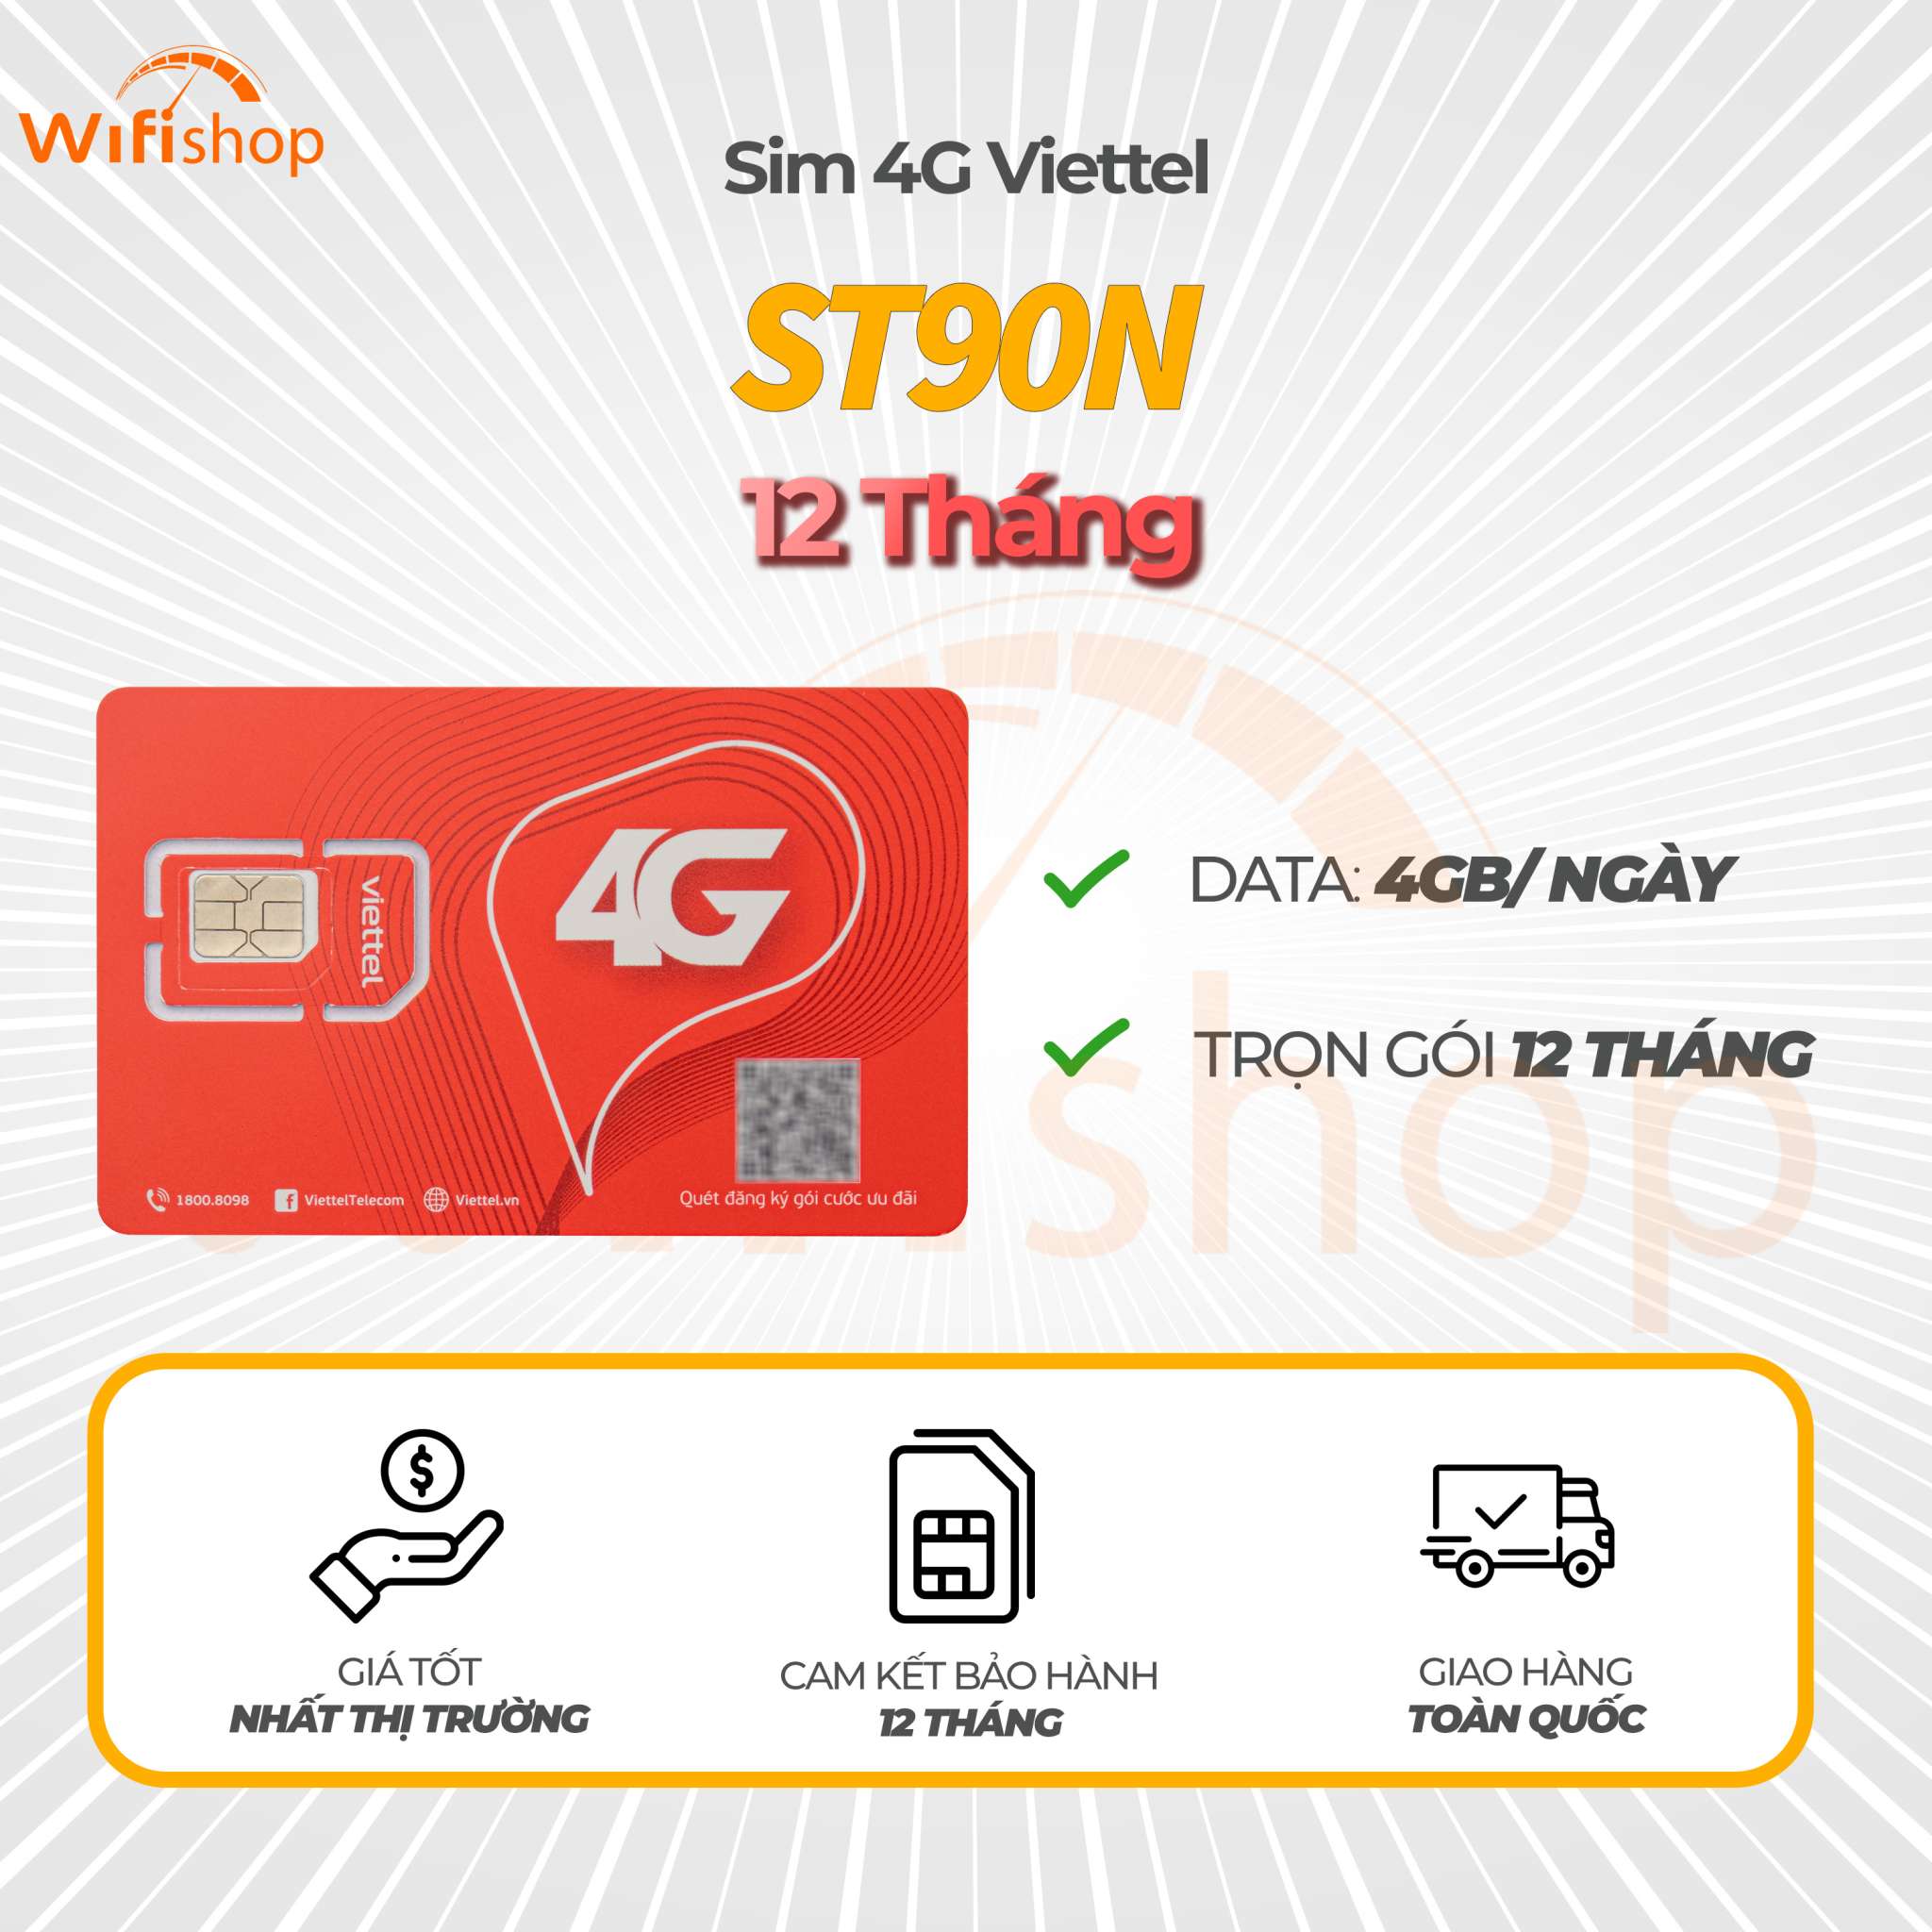 Sim Viettel 4G ST90N ưu đãi 4GB/ ngày – truy cập không giới hạn, 12 tháng không nạp tiền